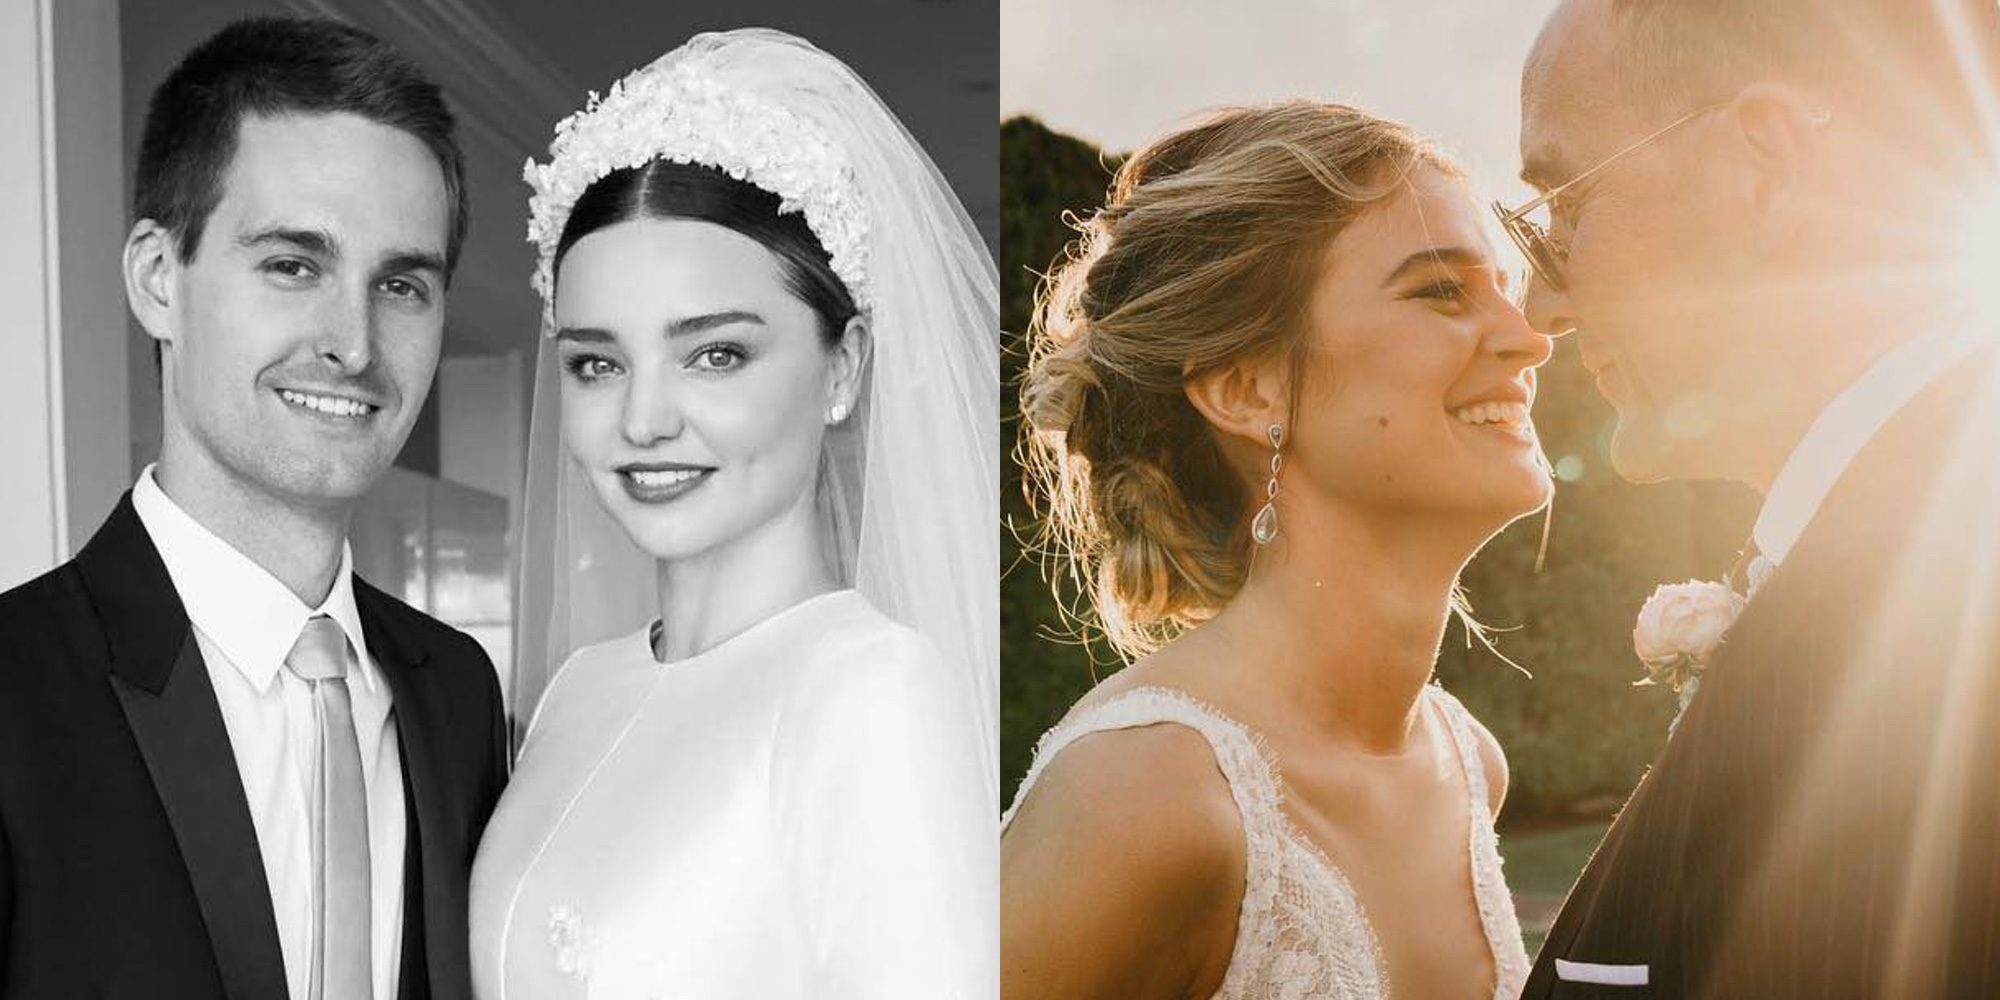 Las bodas de 2017: De Laura Escanes, Ana Boyer o Miranda Kerr a Alberto Garzón o Tom Daley